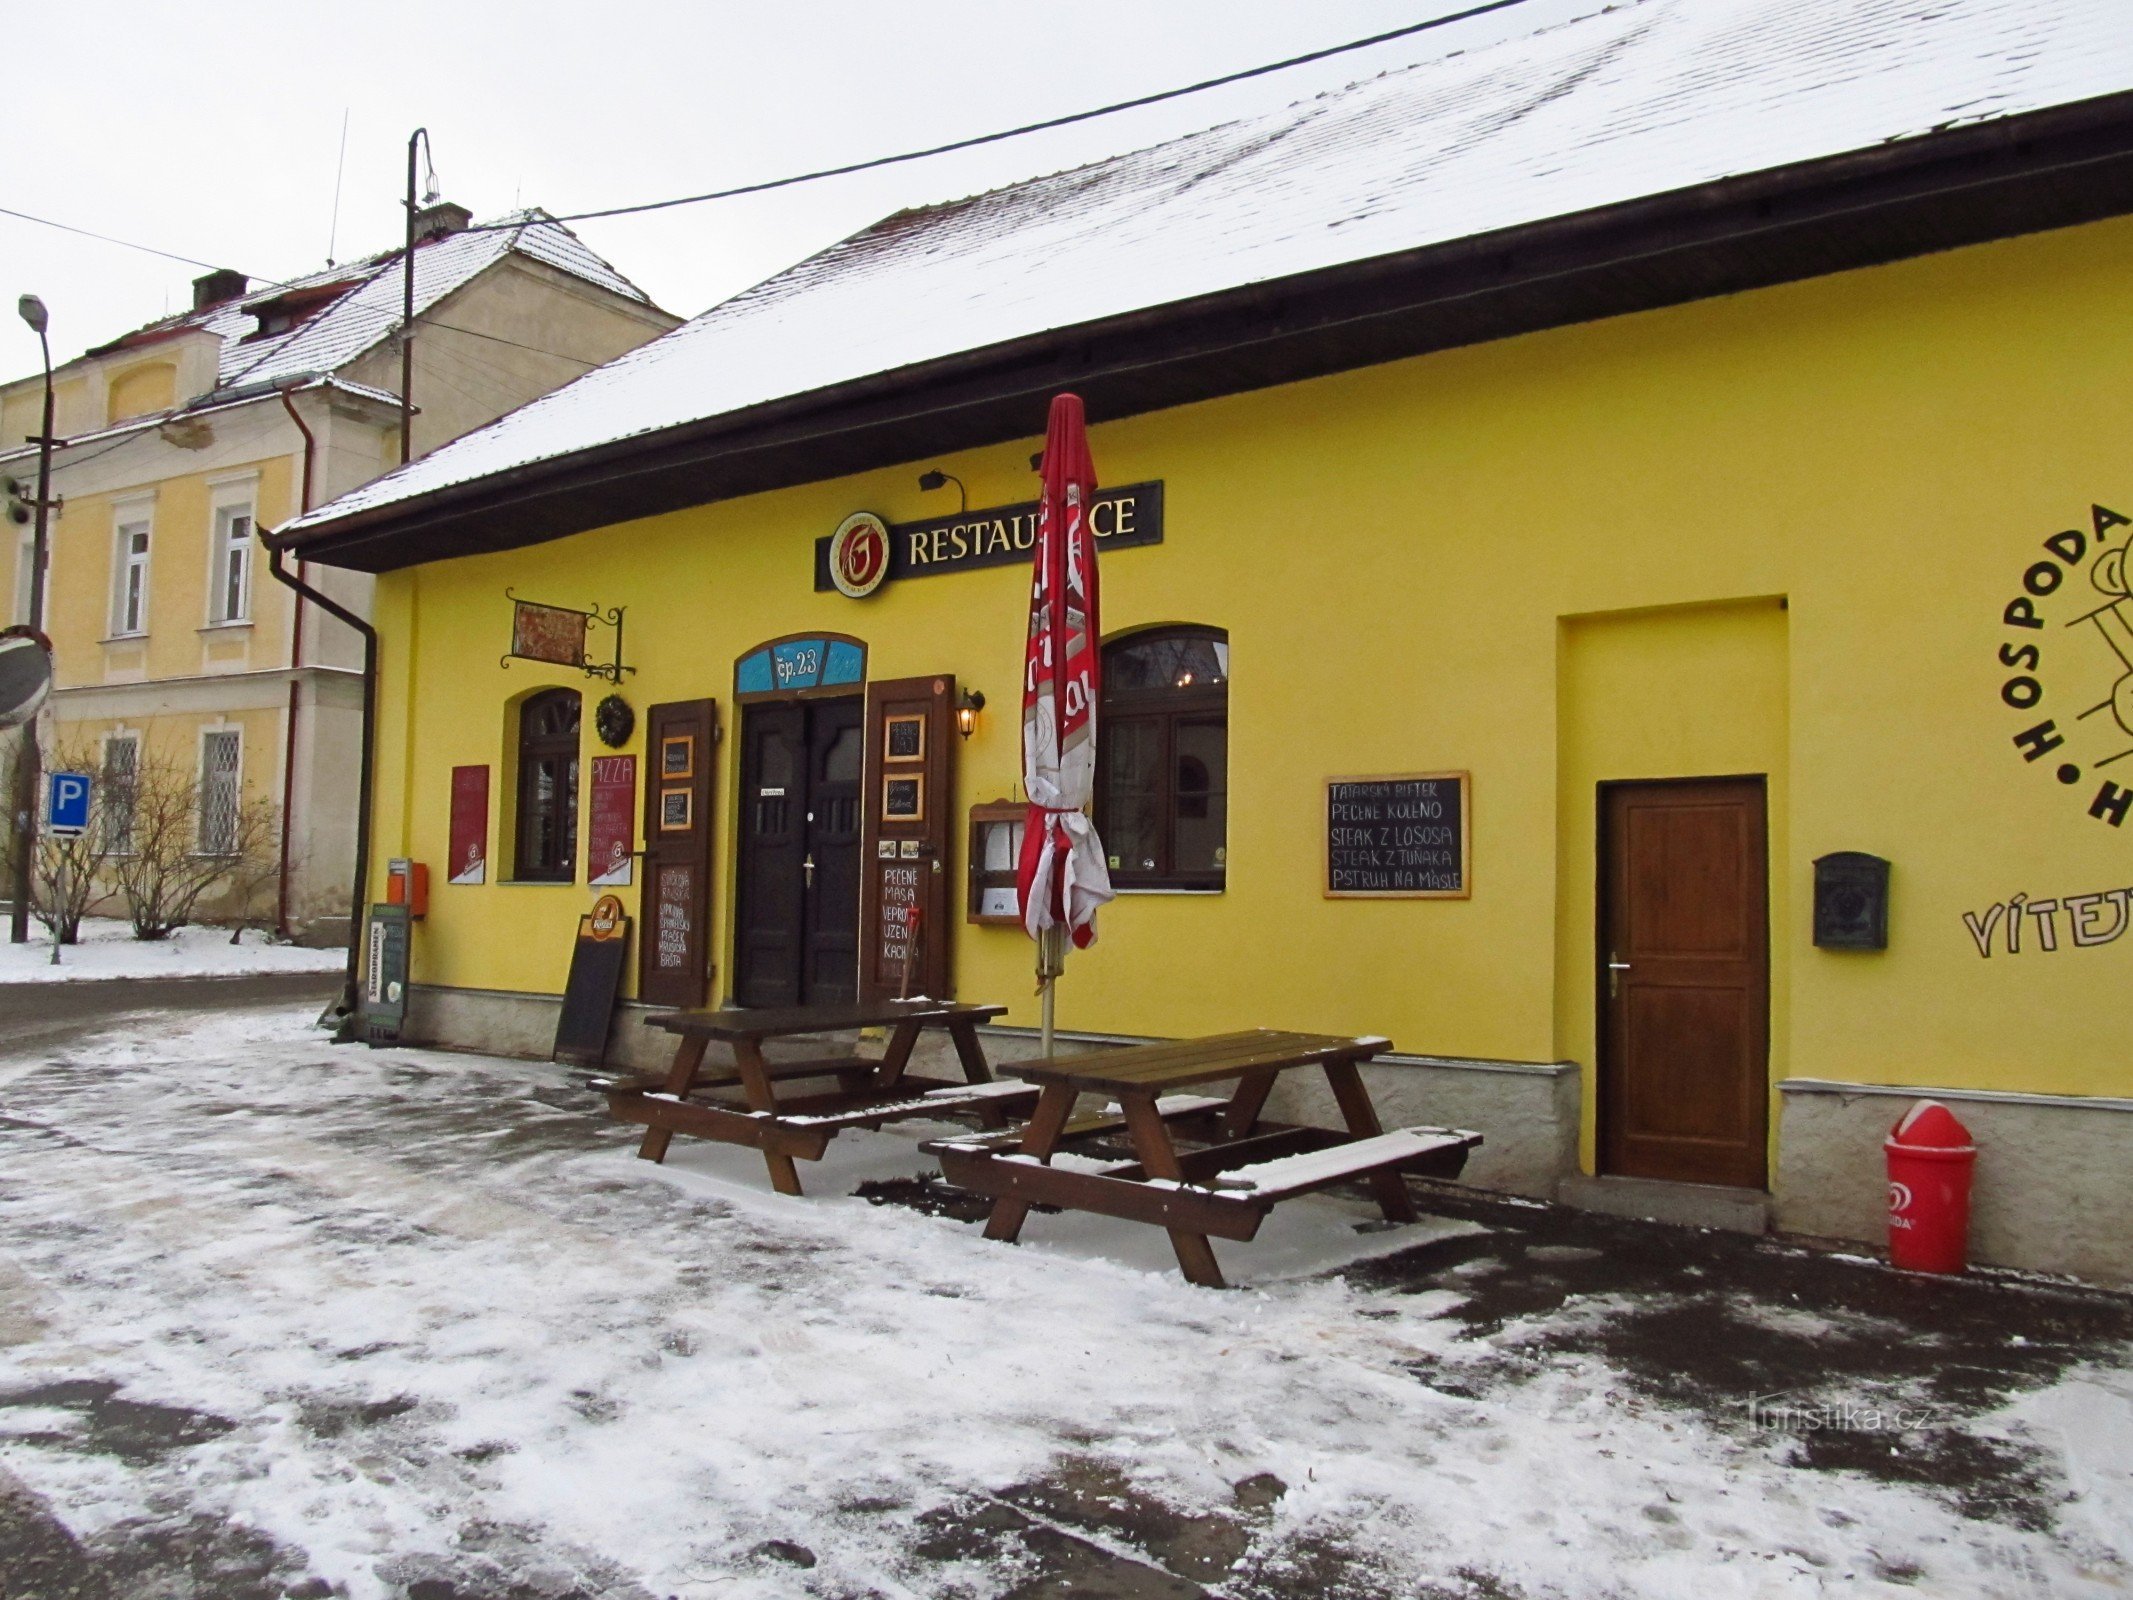 03 Hrusická pub